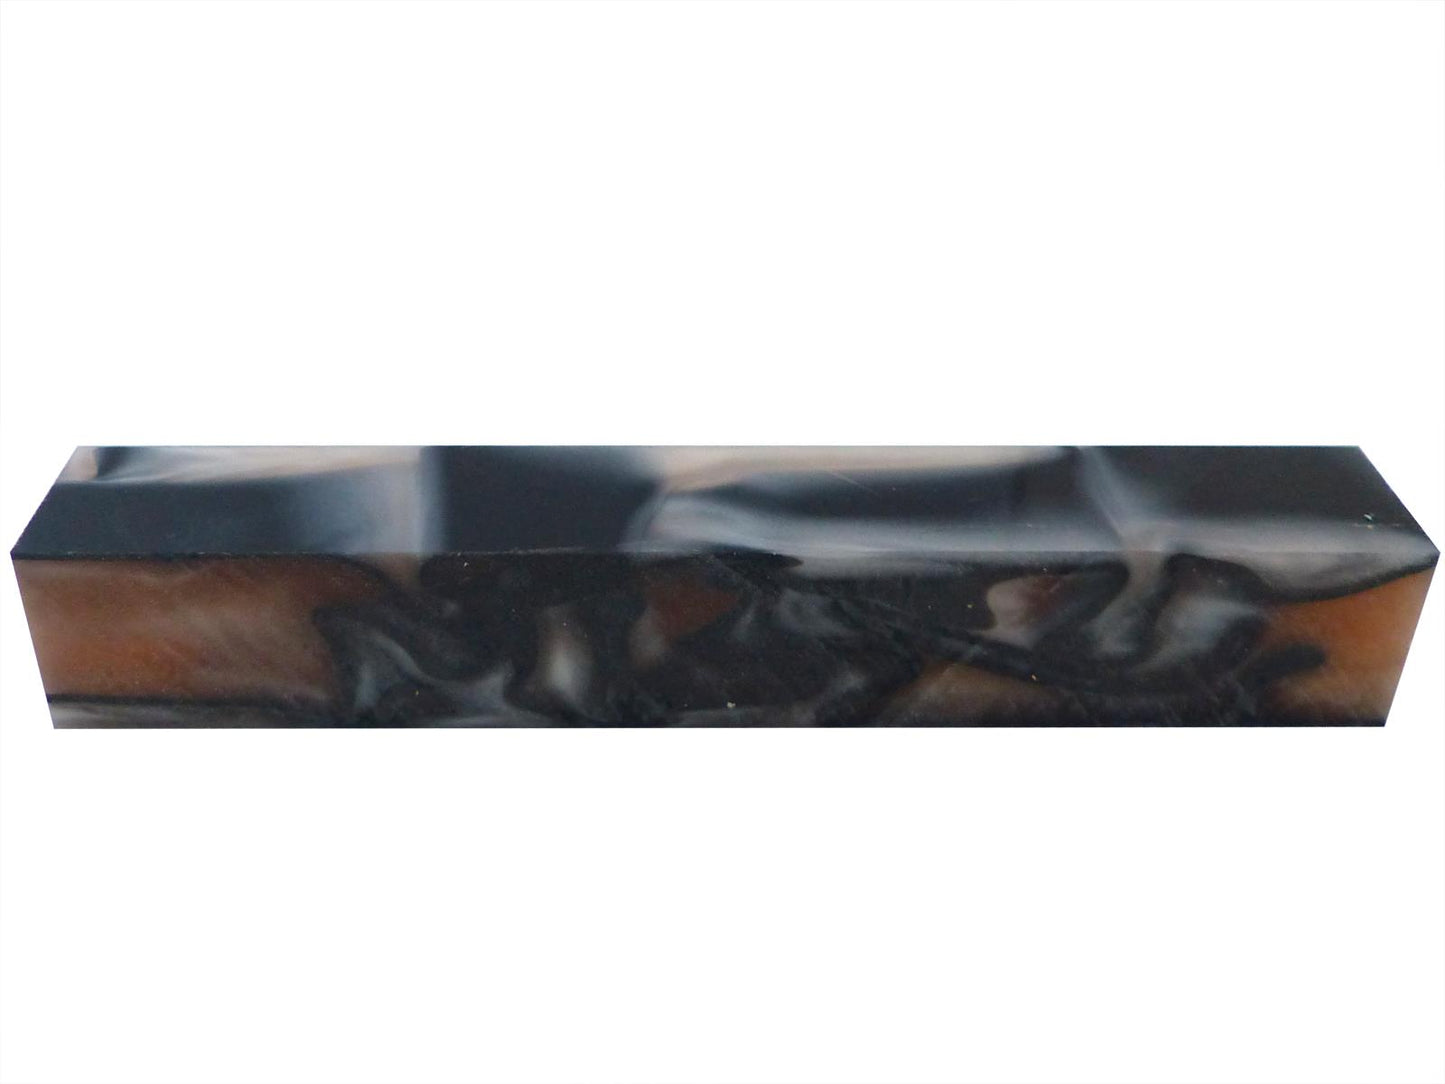 Turners' Mill Kirinite Oyster Abstract Kirinite Acrylic Pen Blank - 150x20x20mm (5.9x0.79x0.79"), 6x3/4x3/4"